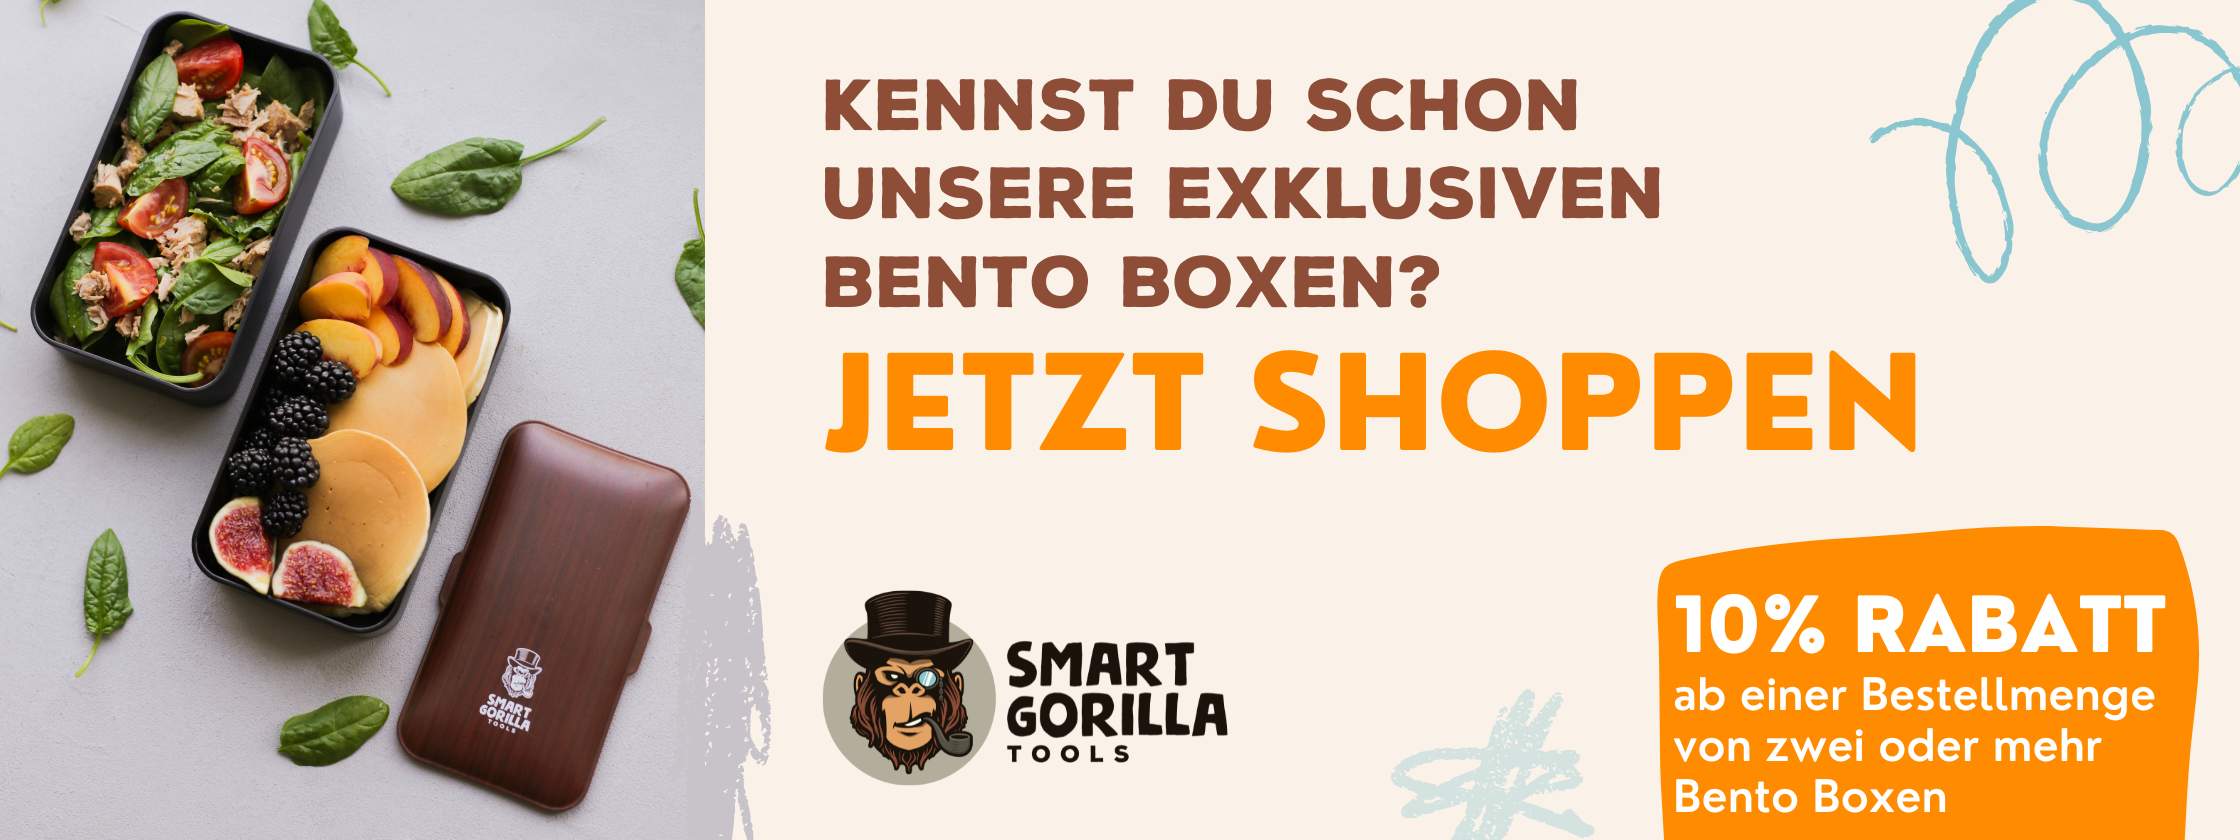 Blog Beitrag: Bento Box für Arbeit - Jetzt gleich die passende Bento Box dazu kaufen bei Smart Gorilla Tools